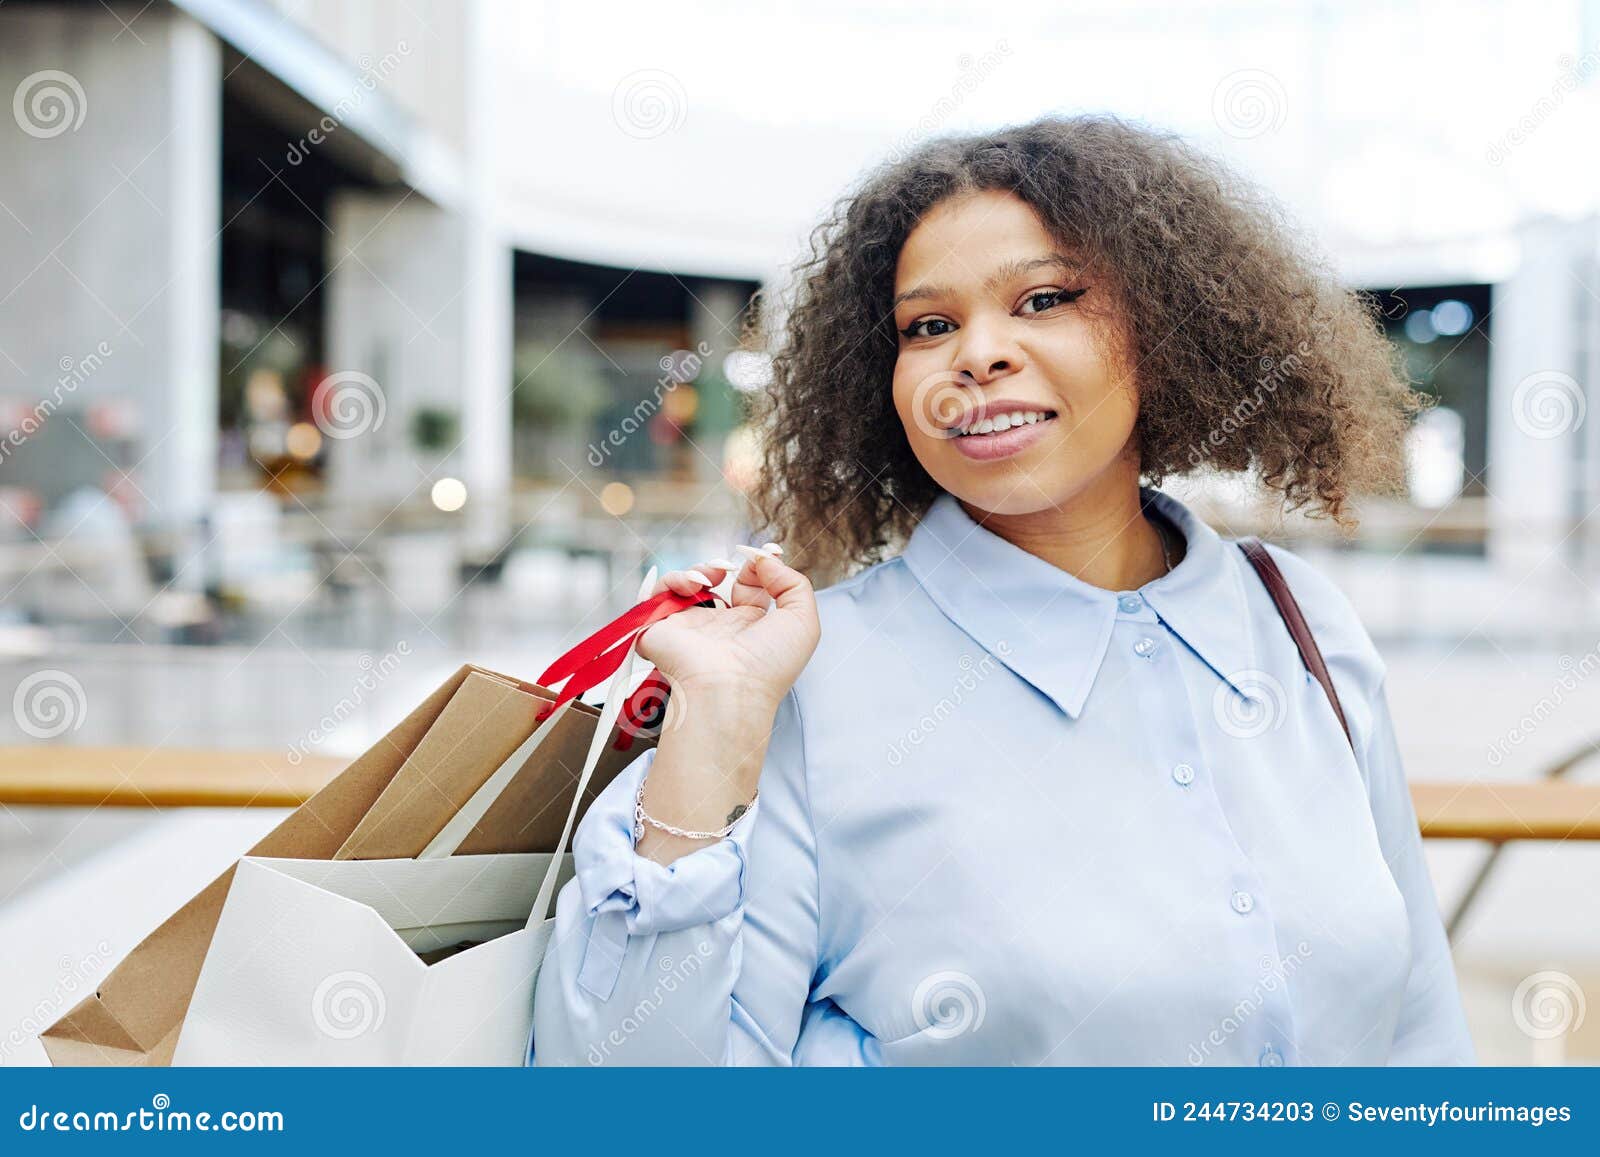 Smiling Black Woman Enjoying Shopping Stock Image - Image of girl ...